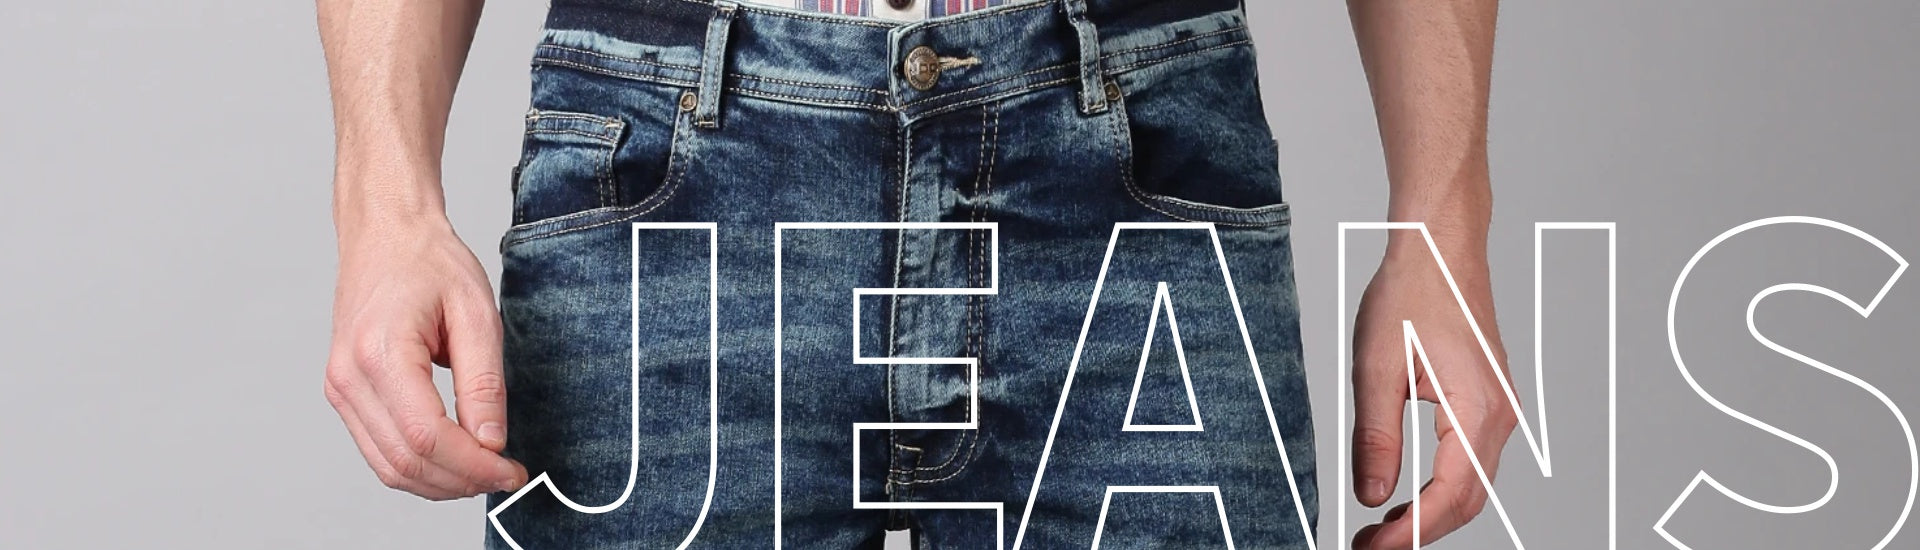 Jeans for Men: Buy Best Branded Jeans Pants for Men Online| GAS Jeans